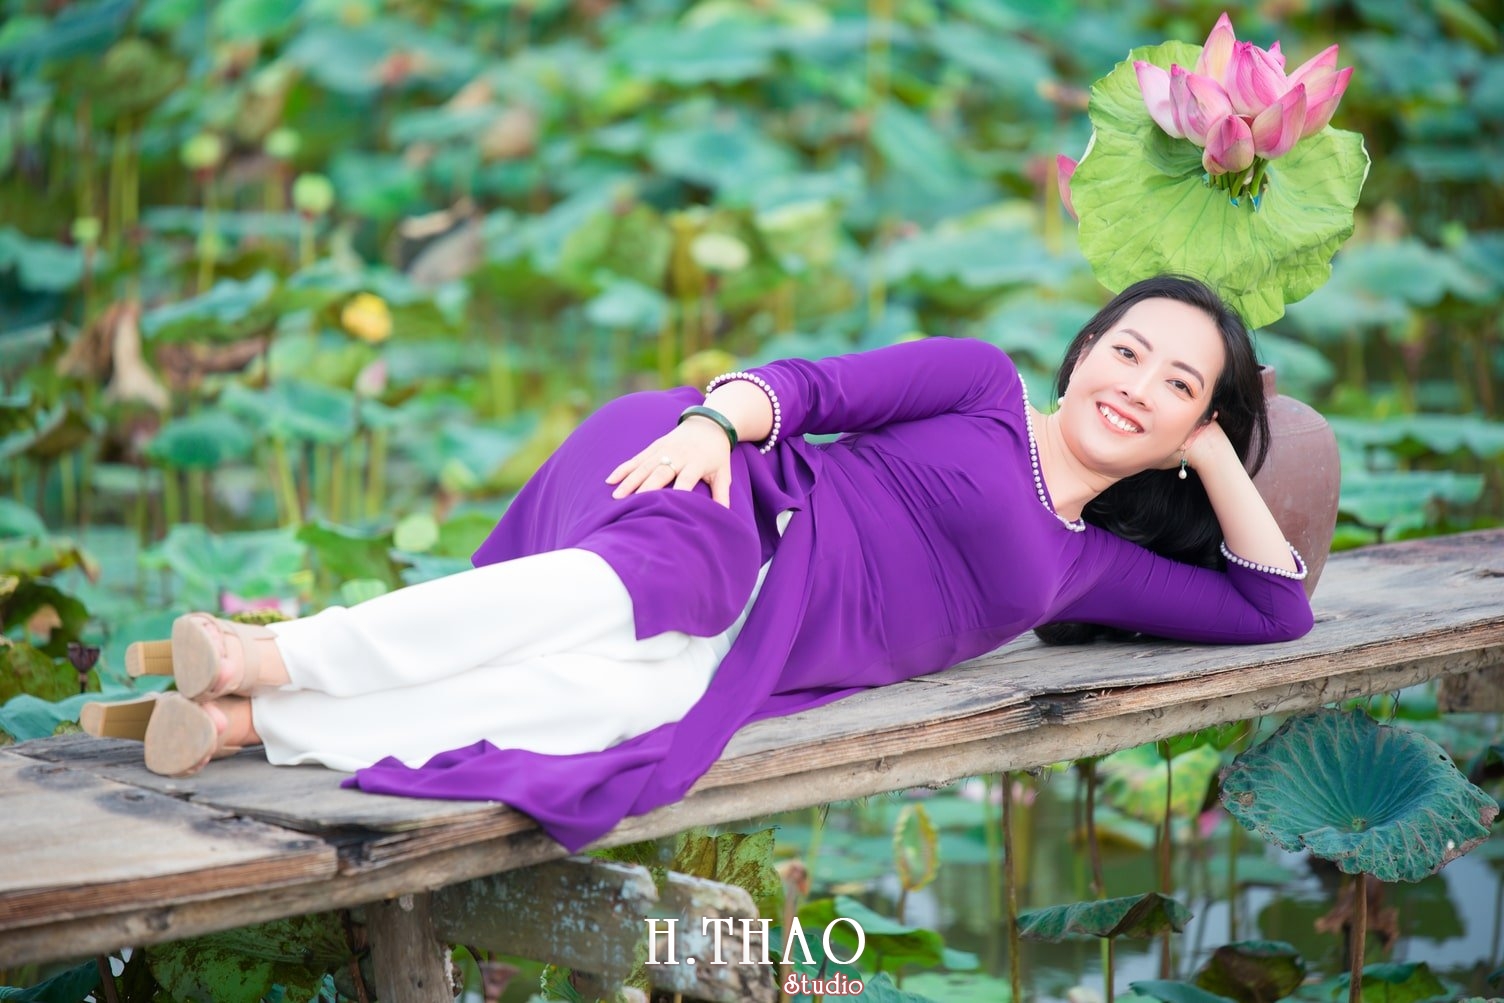 Anh Hoa sen tam da 5 - Bảng giá chụp hình hoa sen Tam đa quận 9 trọn gói - HThao Studio